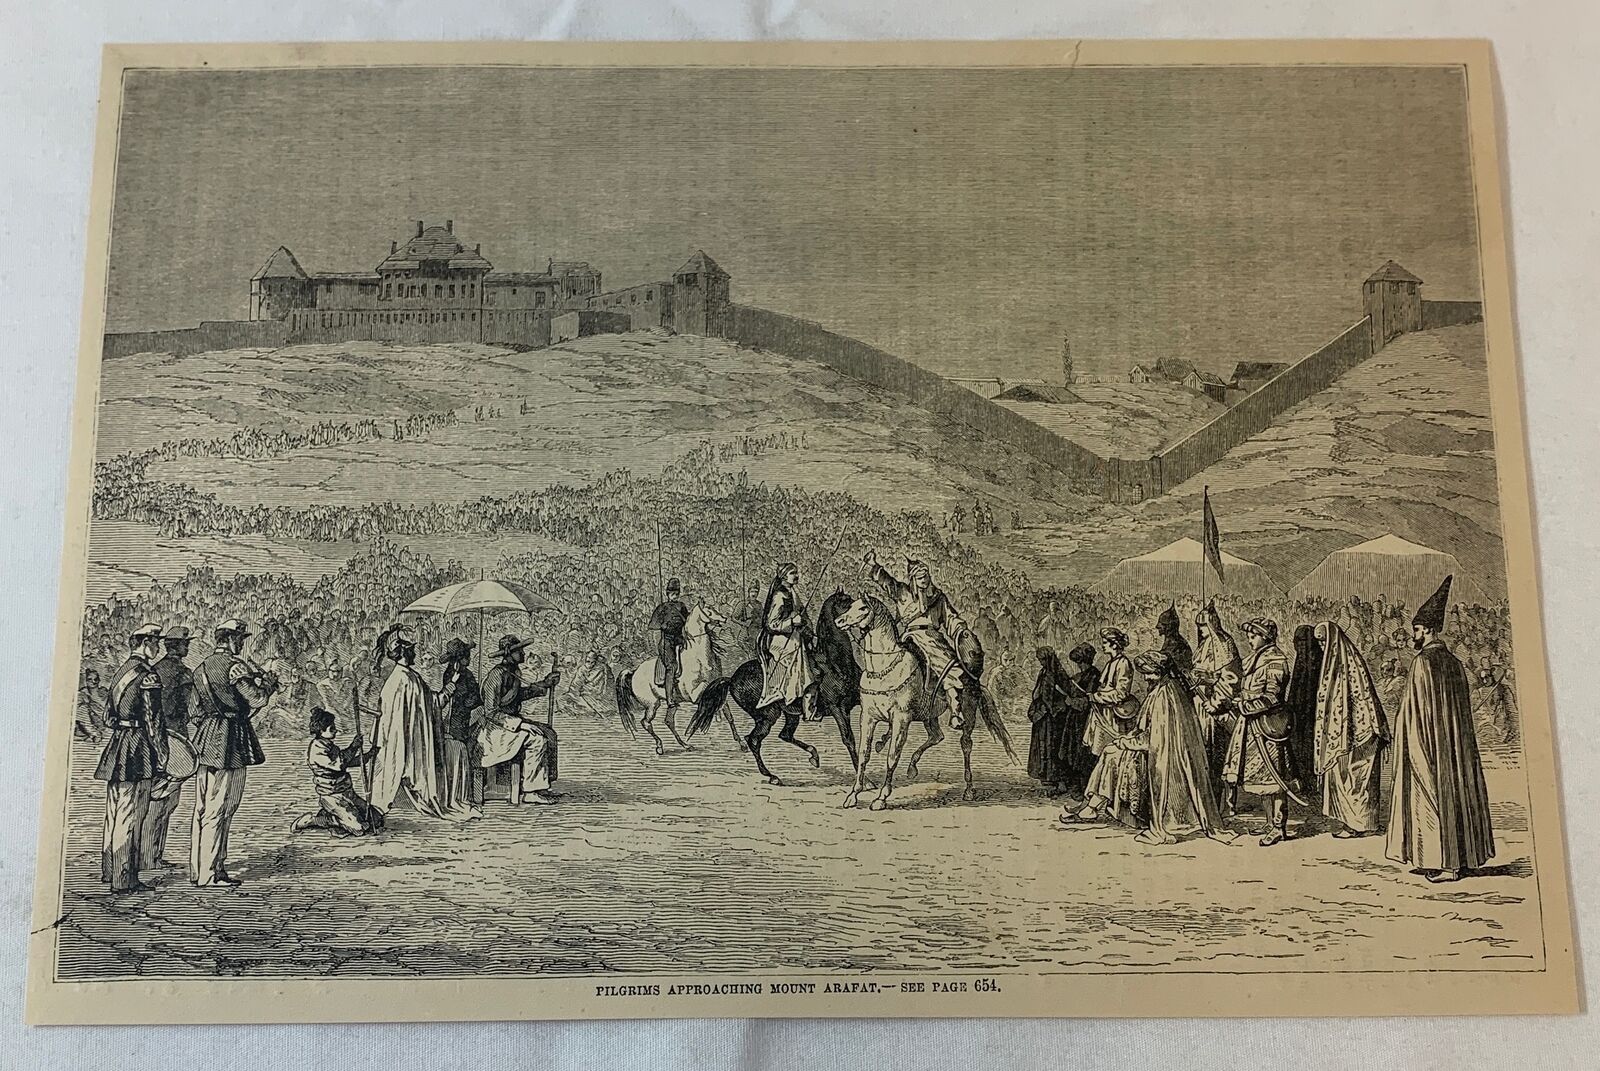 1879 magazine engraving ~ PILGRIMS APPROACHING MOUNT ARARAT